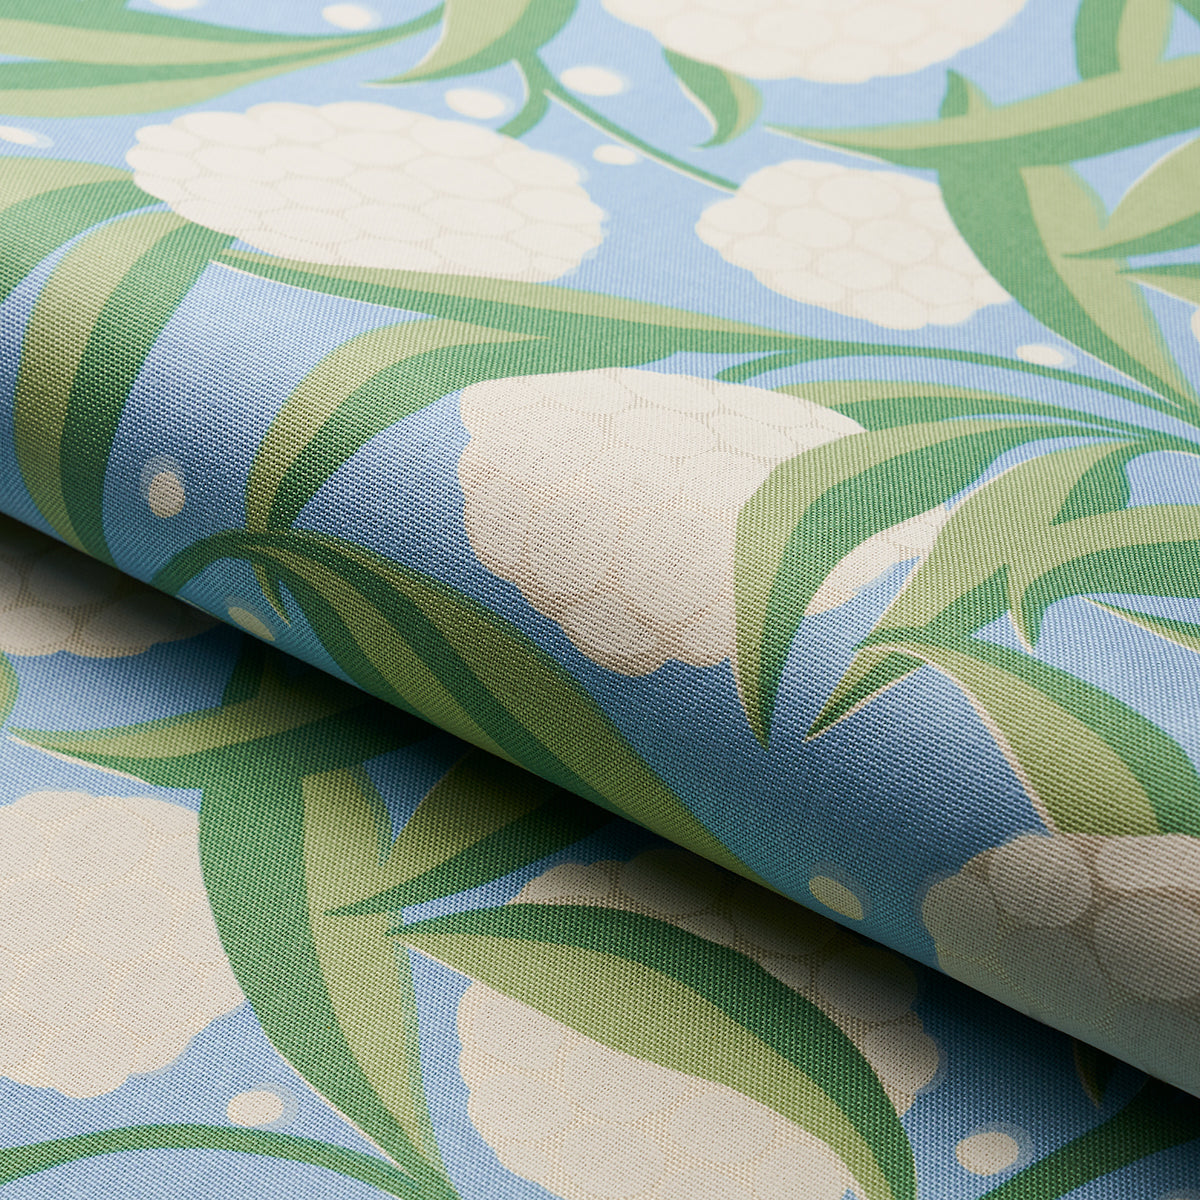 Purchase 180070 | Azulejos, Delft - Schumacher Fabric